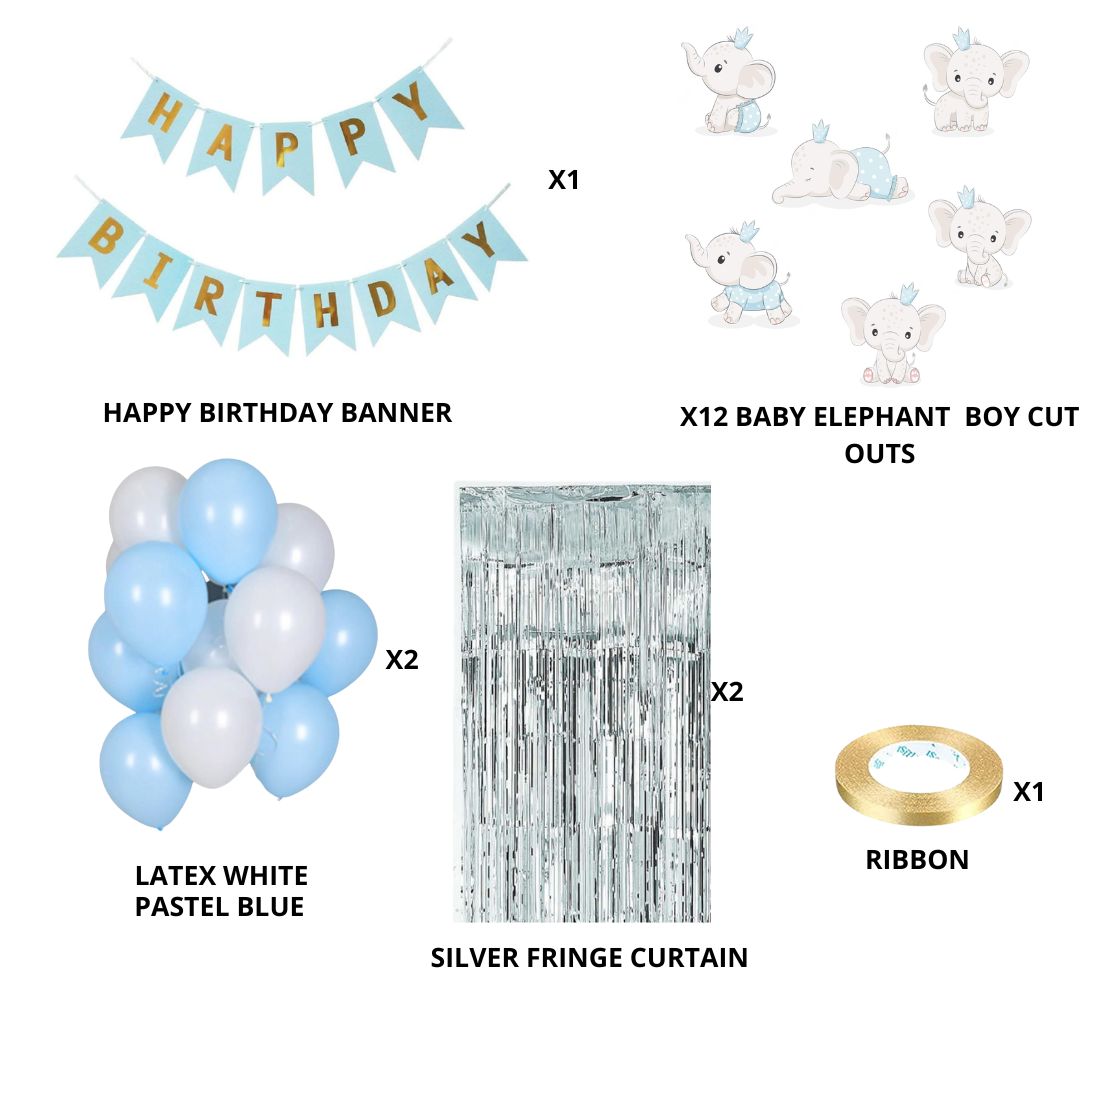 Baby Elephant Boy Theme Balloon Decor DIY Kit (56 Pcs)